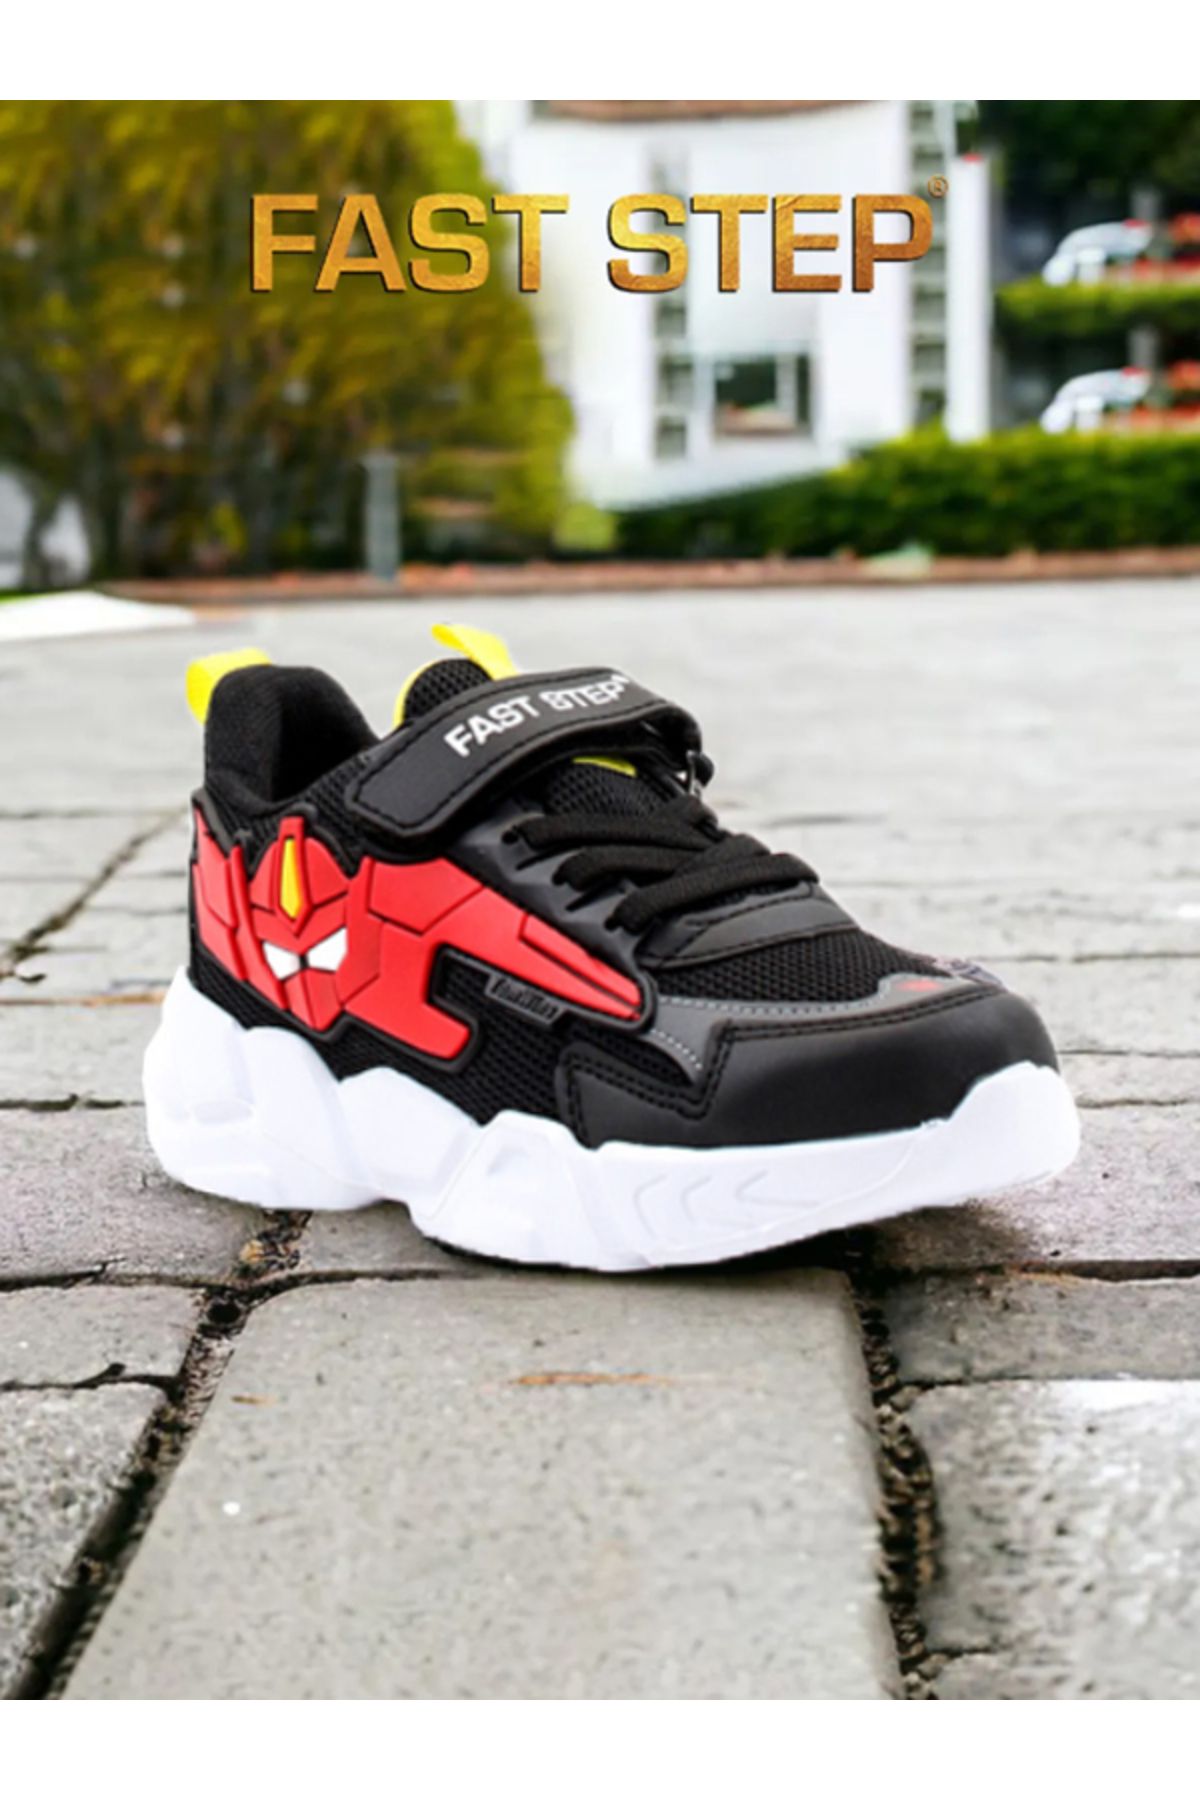 Fast Step Çocuk Spor Ayakkabı Anatomik Taban Hafif Sneaker Ayakkabı Siyah Kırmızı 615xca023